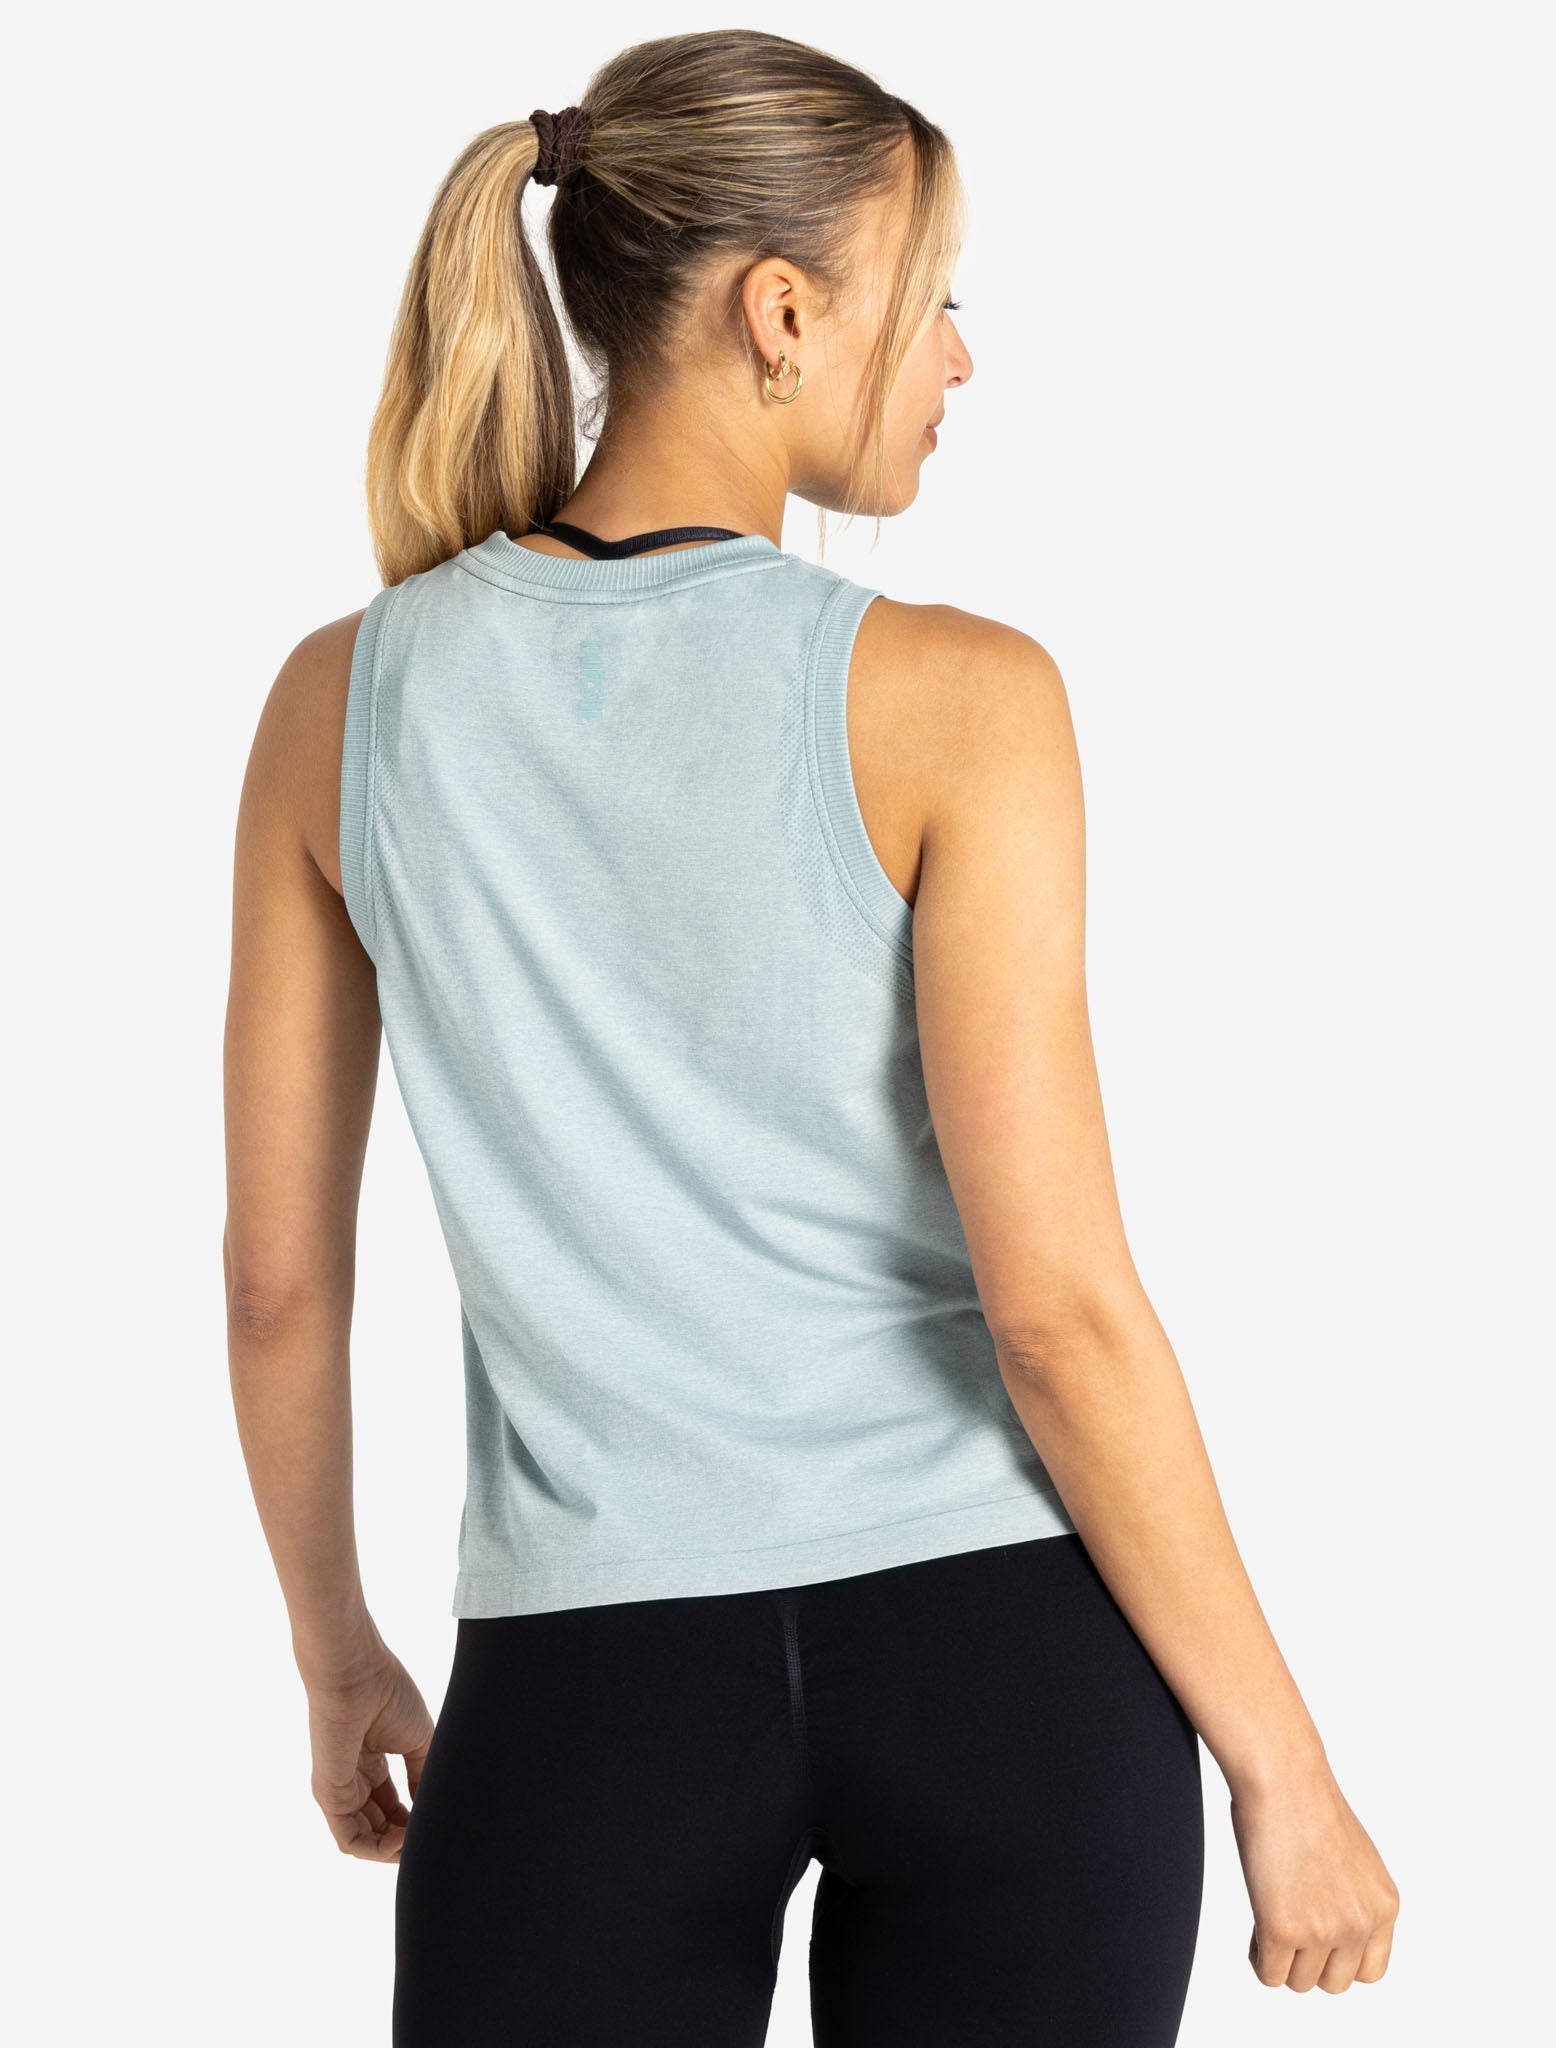 Gymshark Heather Seamless T-Shirt - Deep Teal/Seafoam Blue Marl